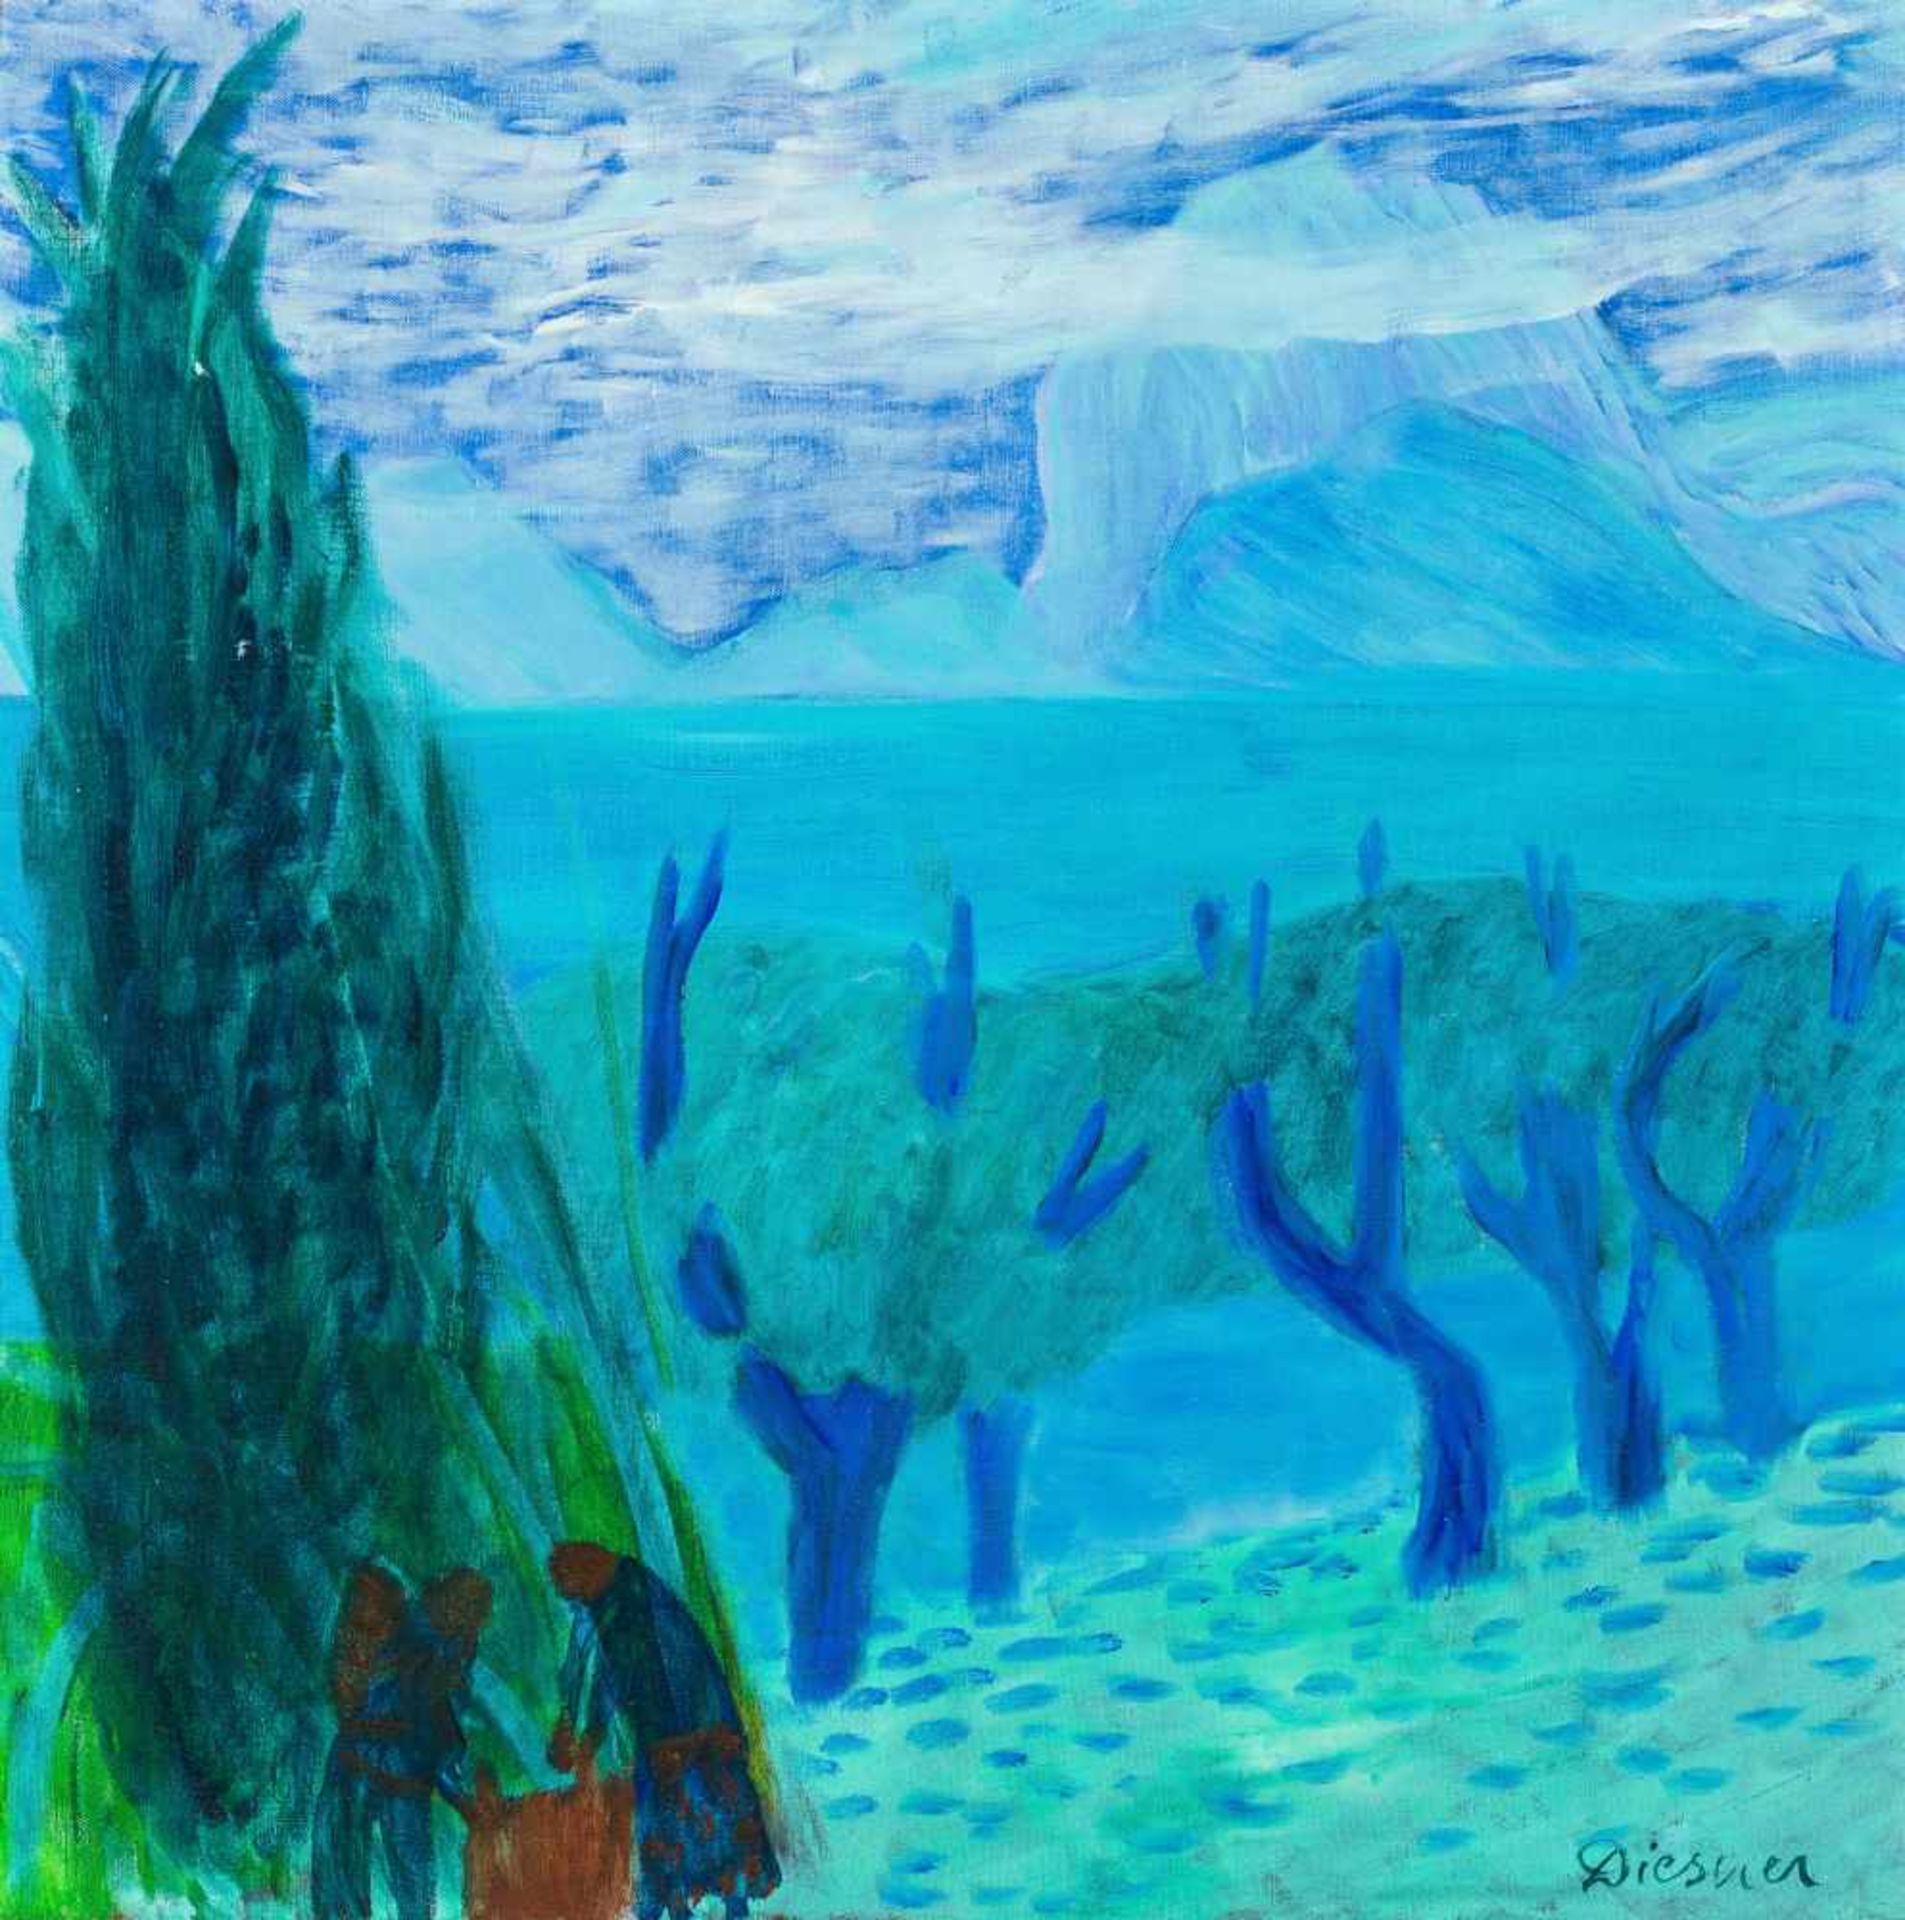 Gerhild DiesnerInnsbruck 1915 - 1995 InnsbruckBlaue LandschaftÖl auf Leinwand / oil on canvas60 x 60